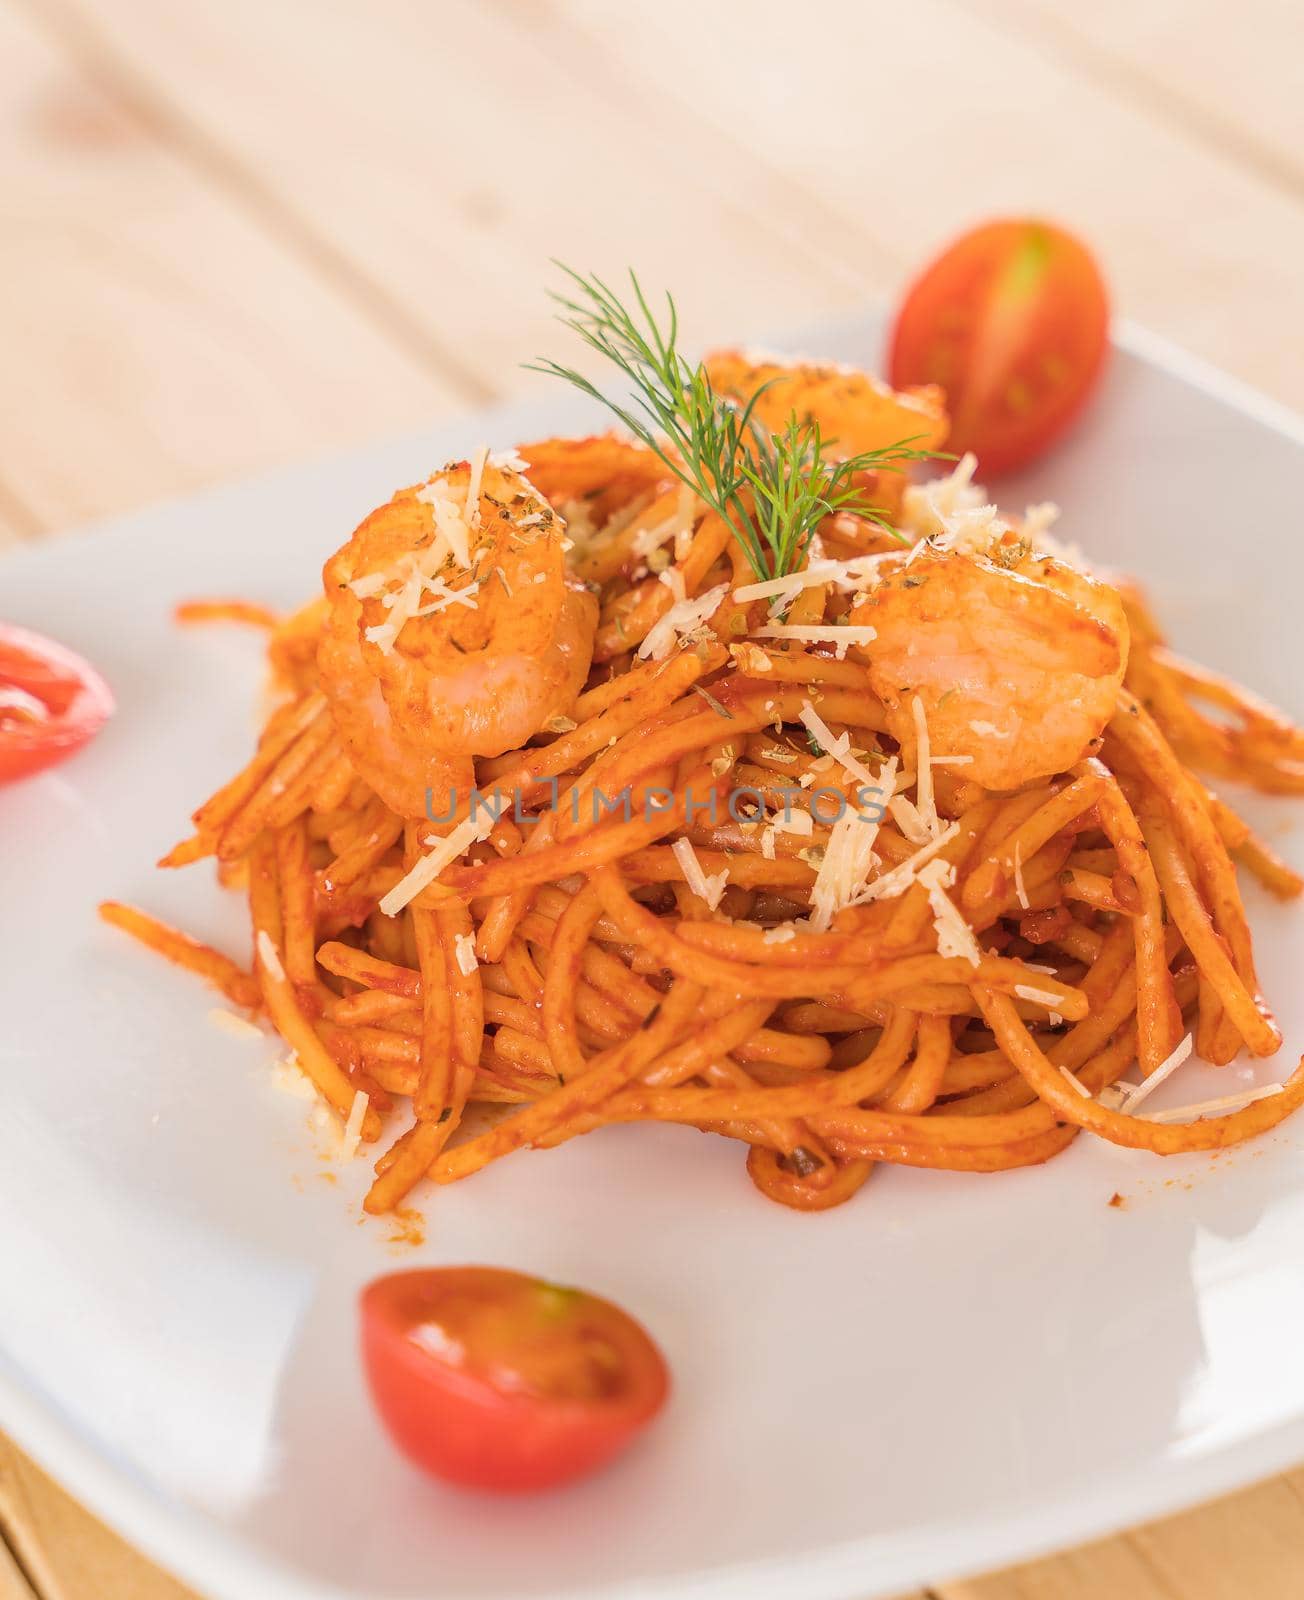 spaghetti with shrimp - Italian food